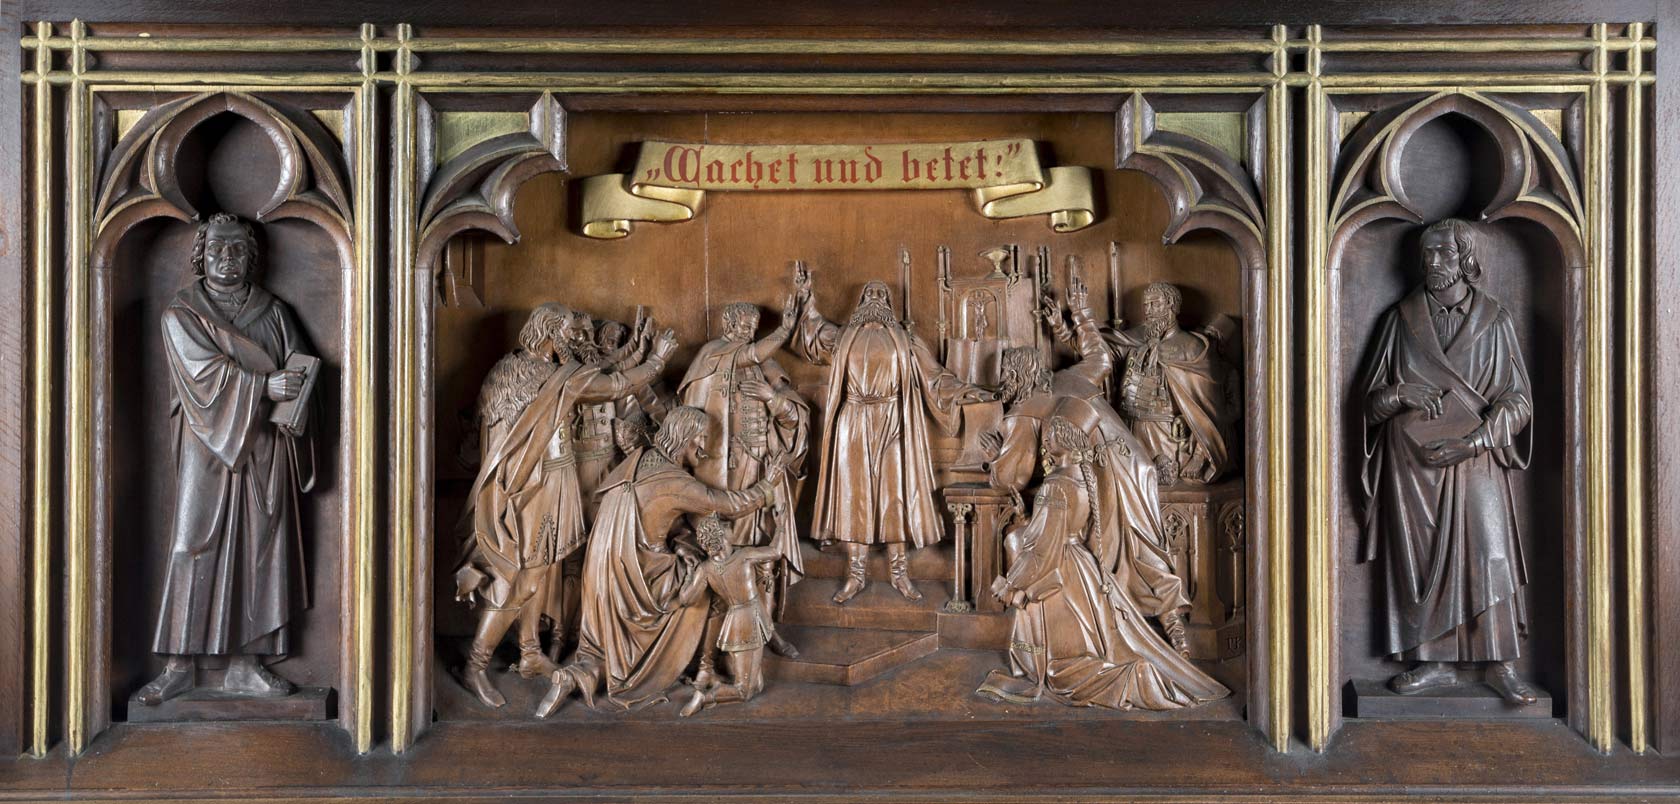 Abb. 9 Franz Schönthaler (Ausführung): Predella des Altars der Schwarzen Kirche zu Kronstadt, 1865-1866. Holz, teilw. gefasst. © Evangelische Kirche A.B. Kronstadt (Foto: Árpád Udvardi)